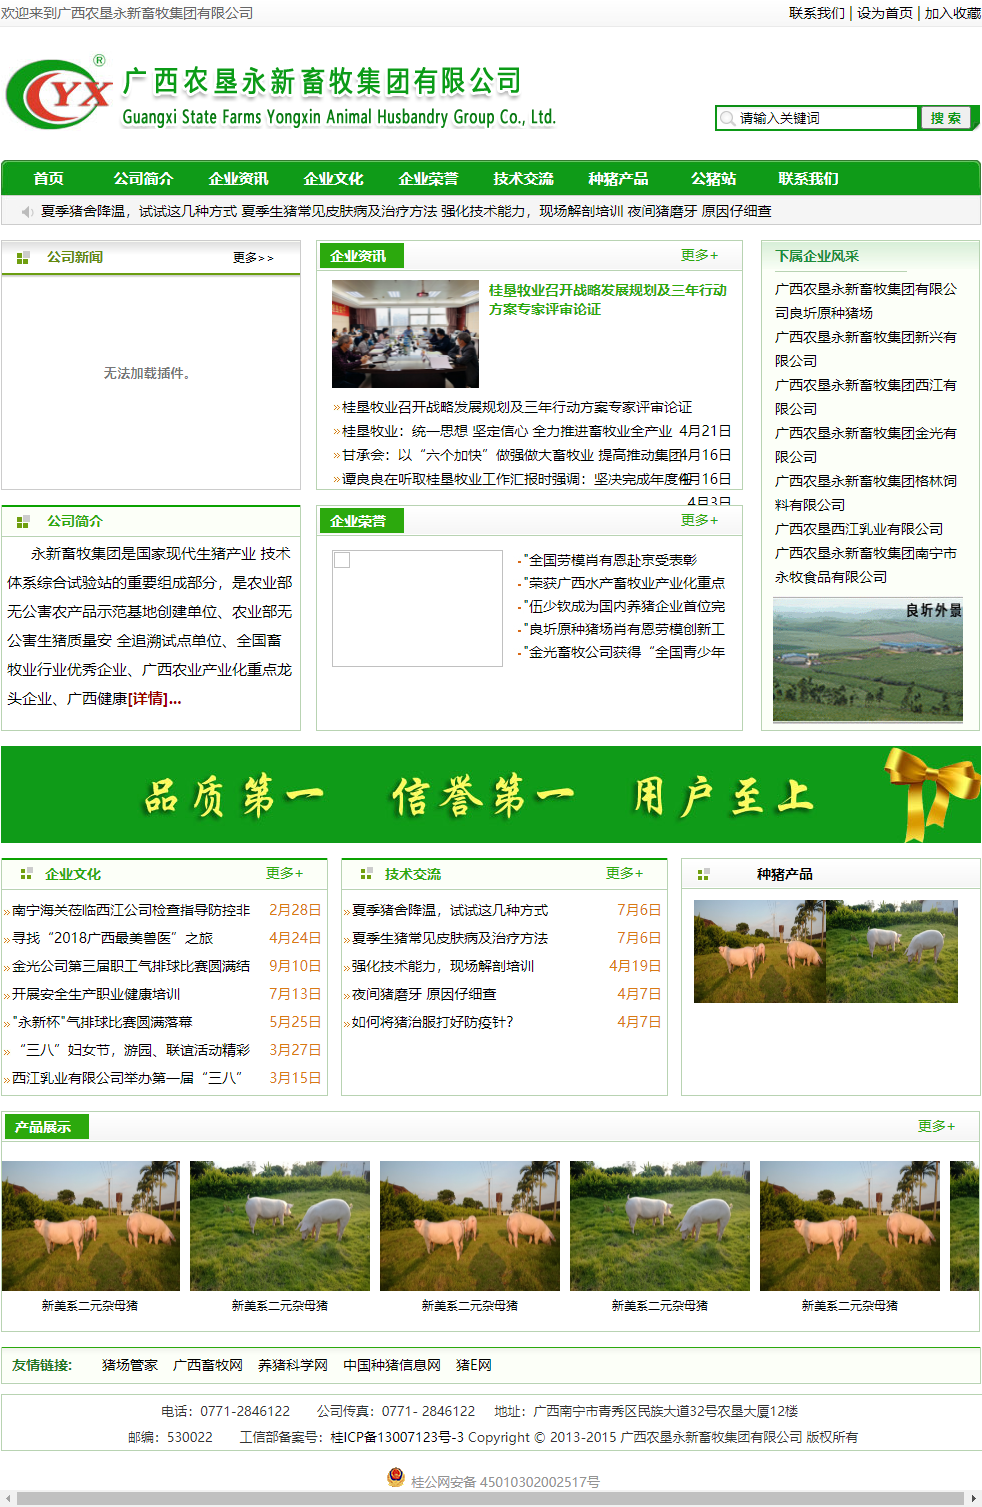 广西农垦永新畜牧集团有限公司网站案例